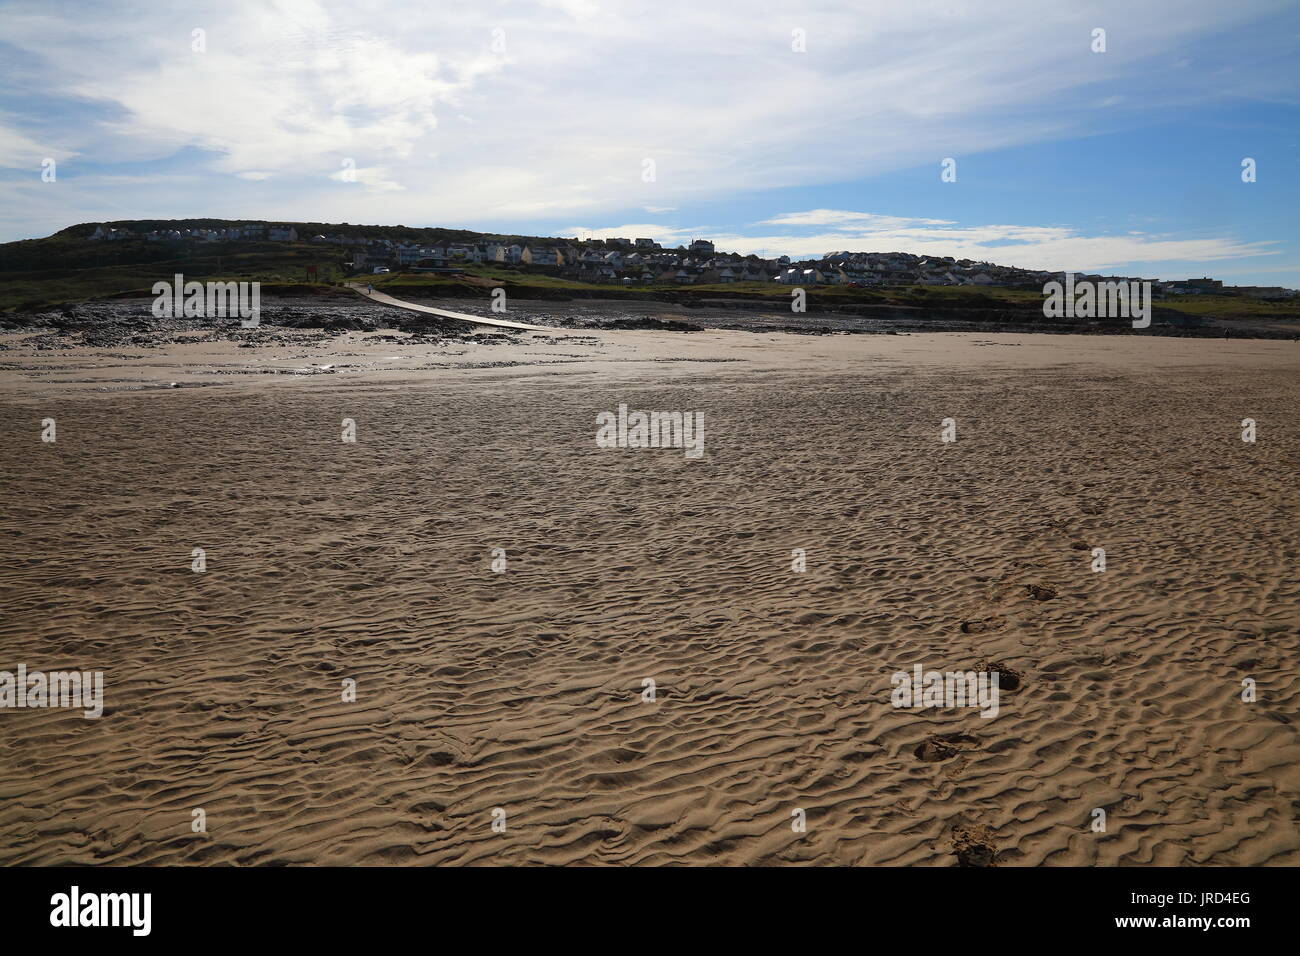 À l'ensemble de la plage de sable ondulé vers le village d'Aberogwr avec ses maisons à flanc de colline et de la cale de halage menant au parking. Banque D'Images